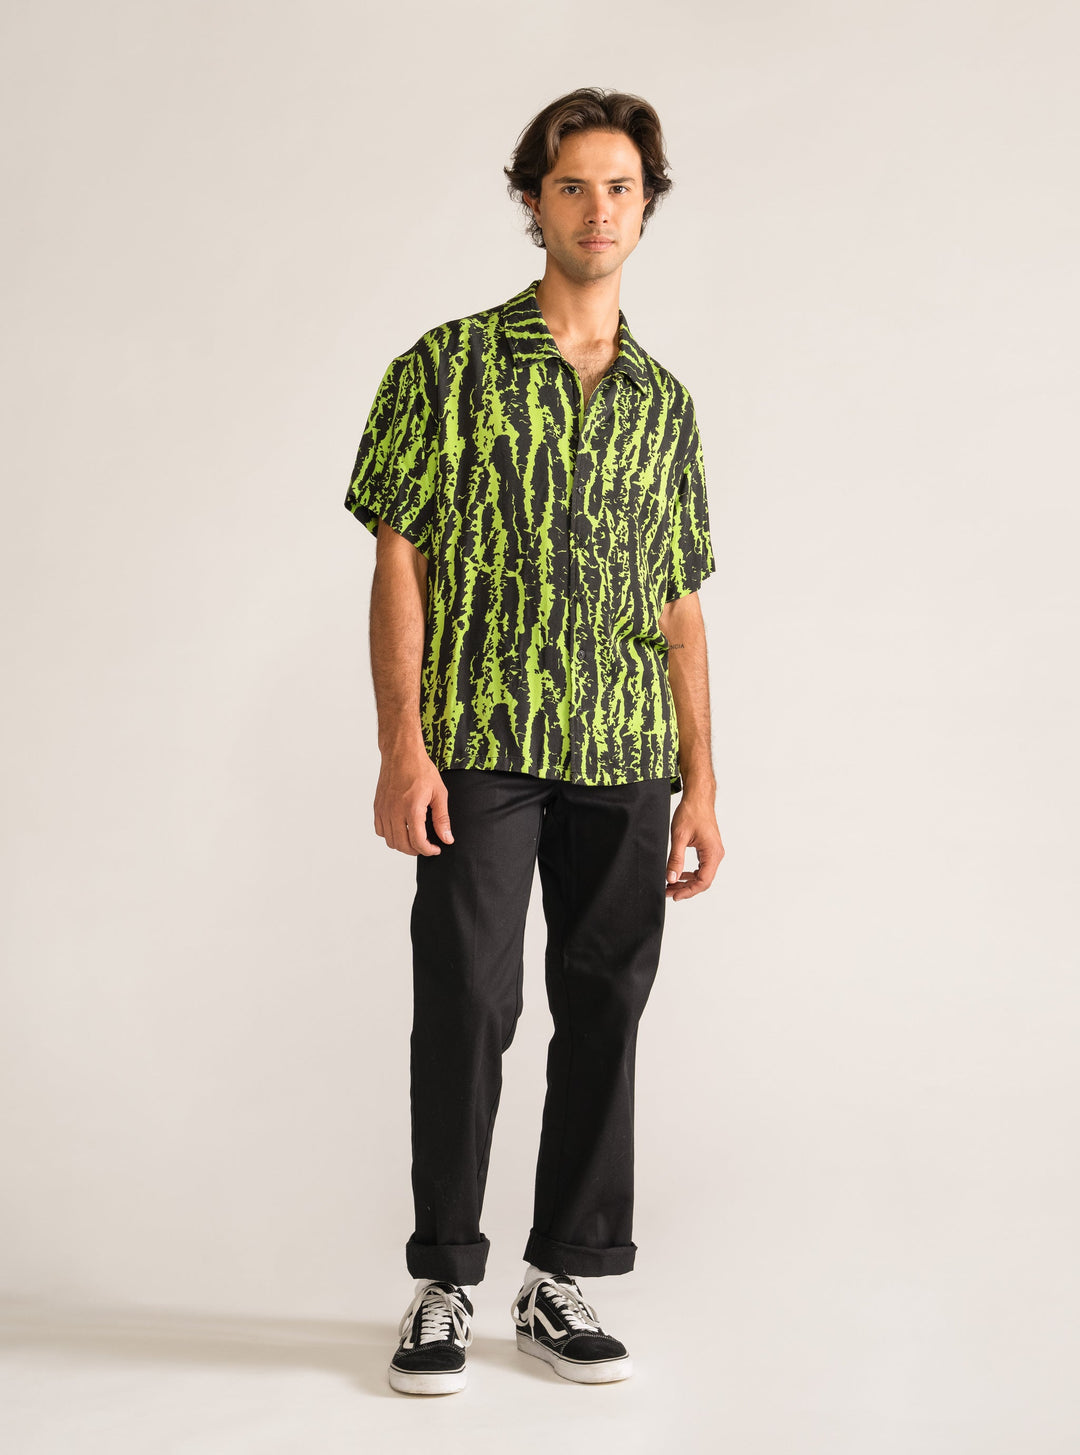 Rizoma Shirt, Green